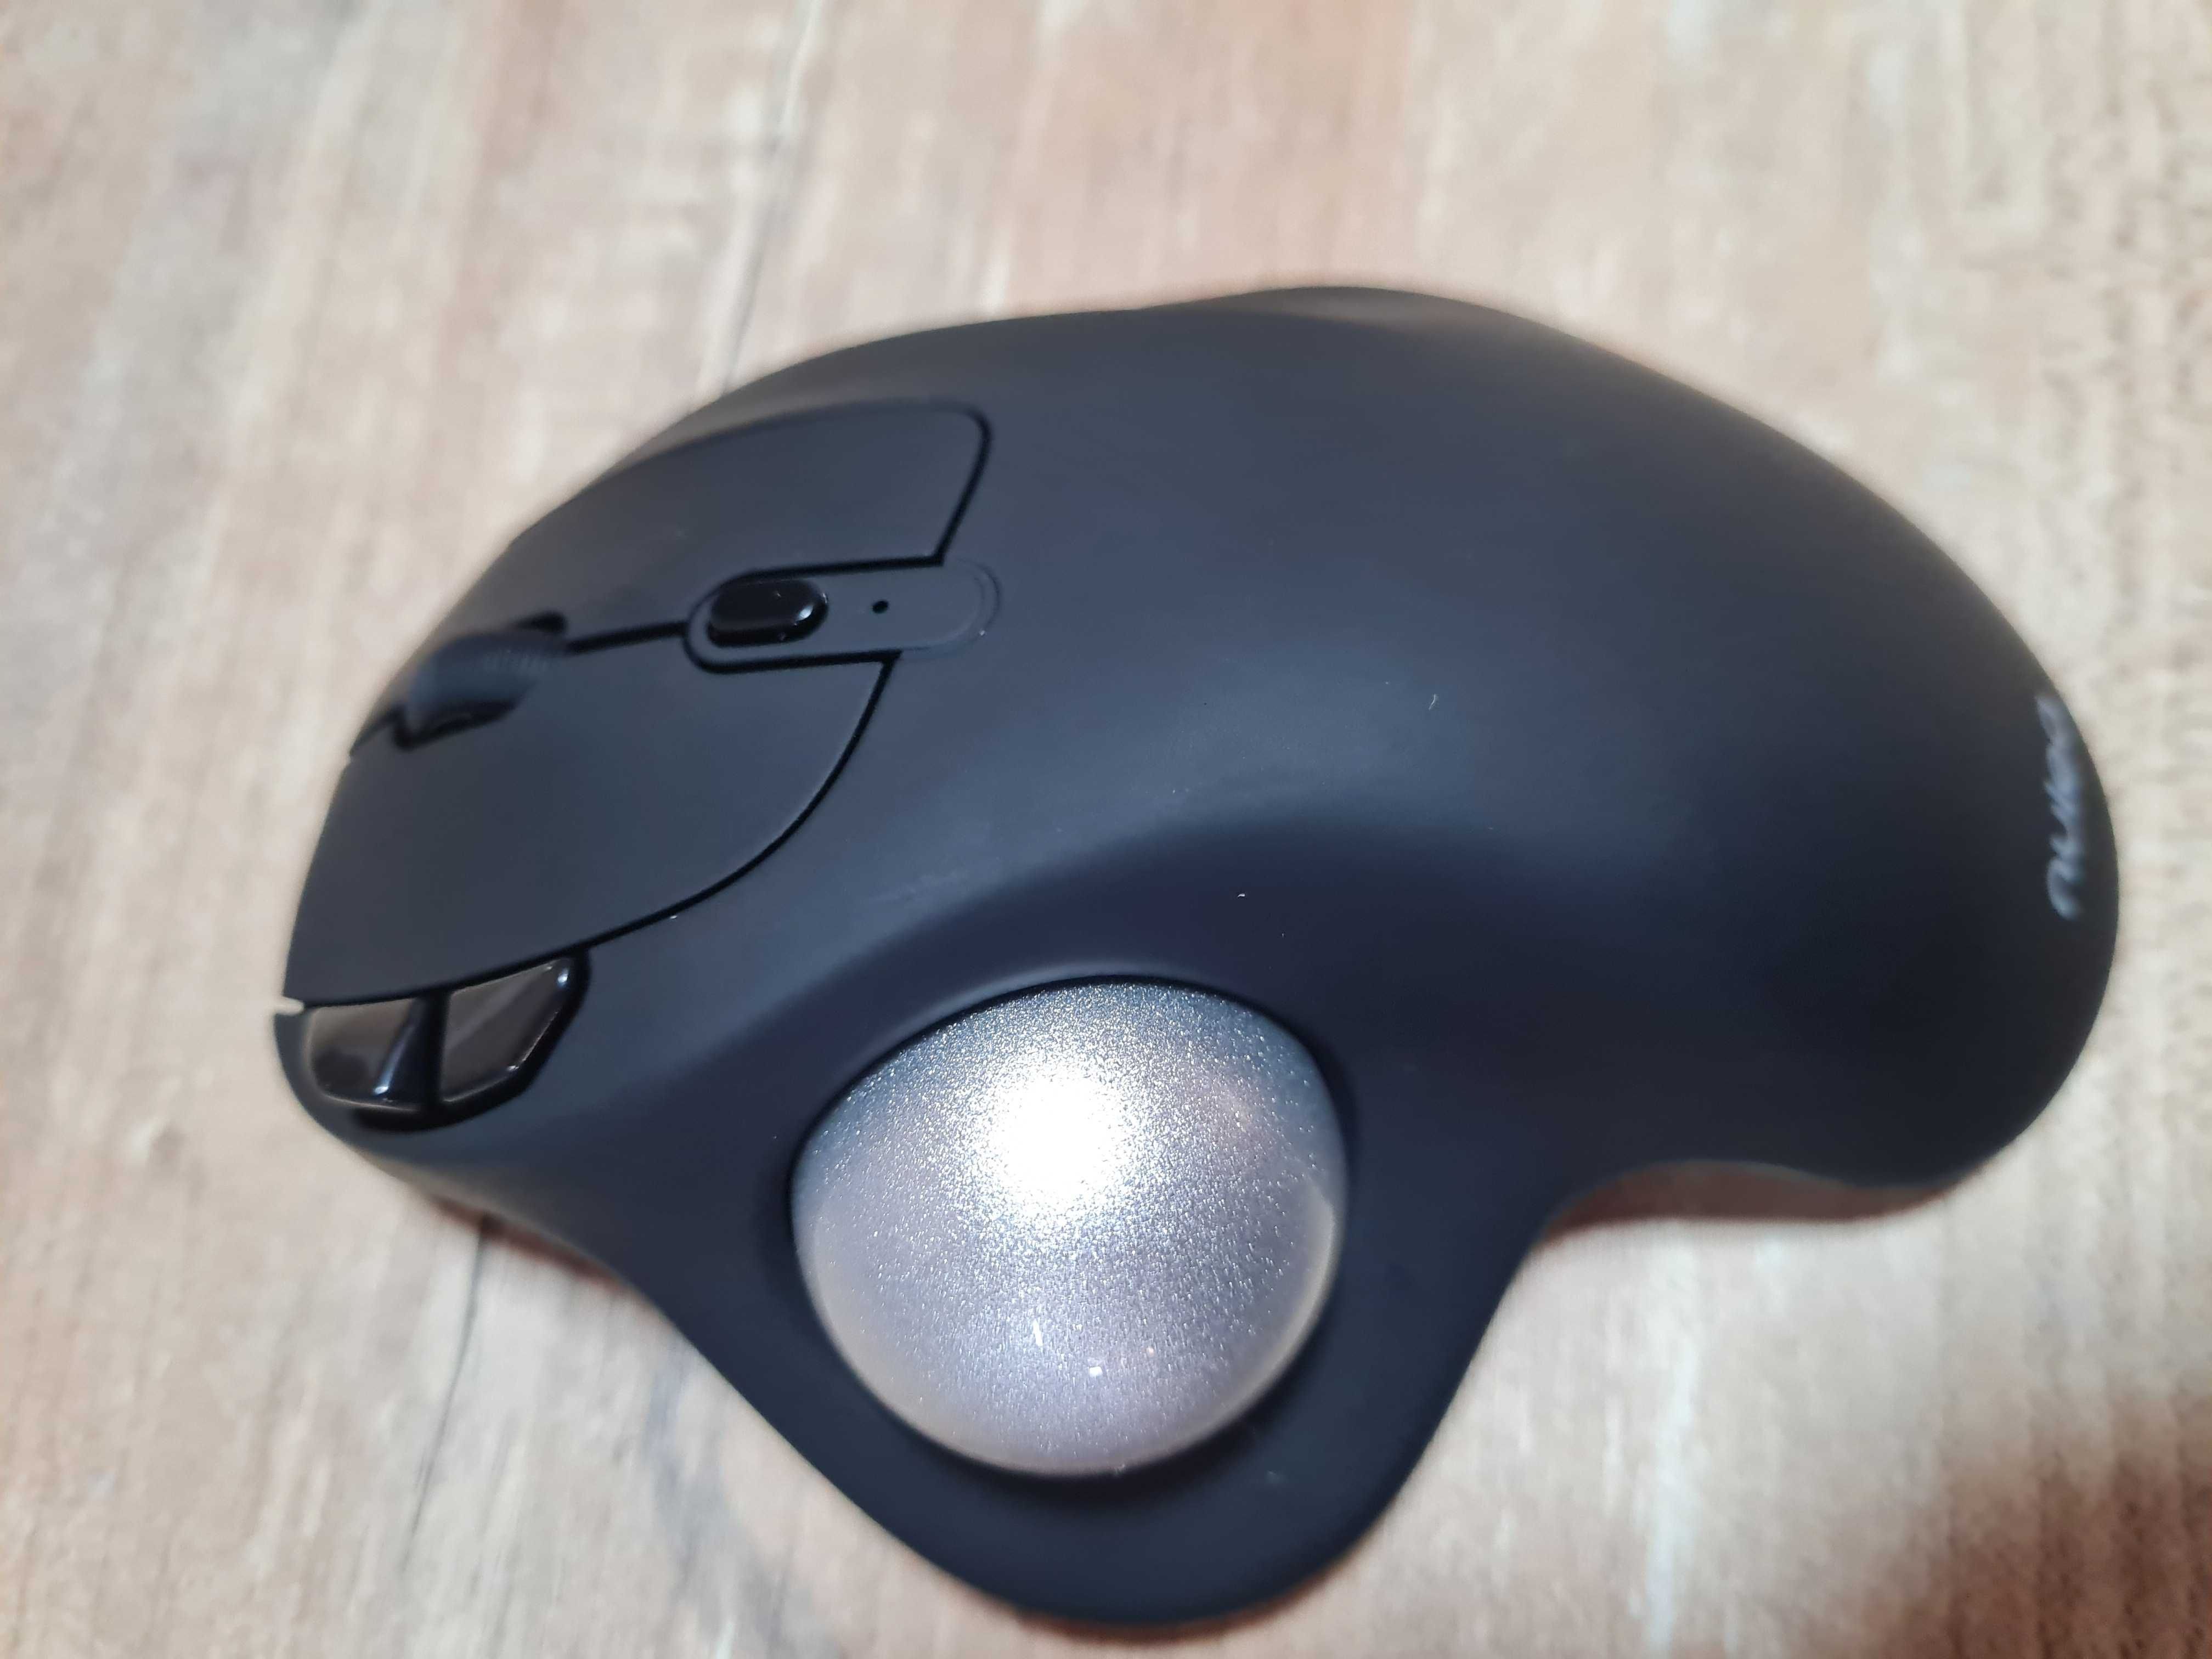 Mouse ergonomic wireless cu trackball, reincarcabil, Nulea, NEGOCIABIL